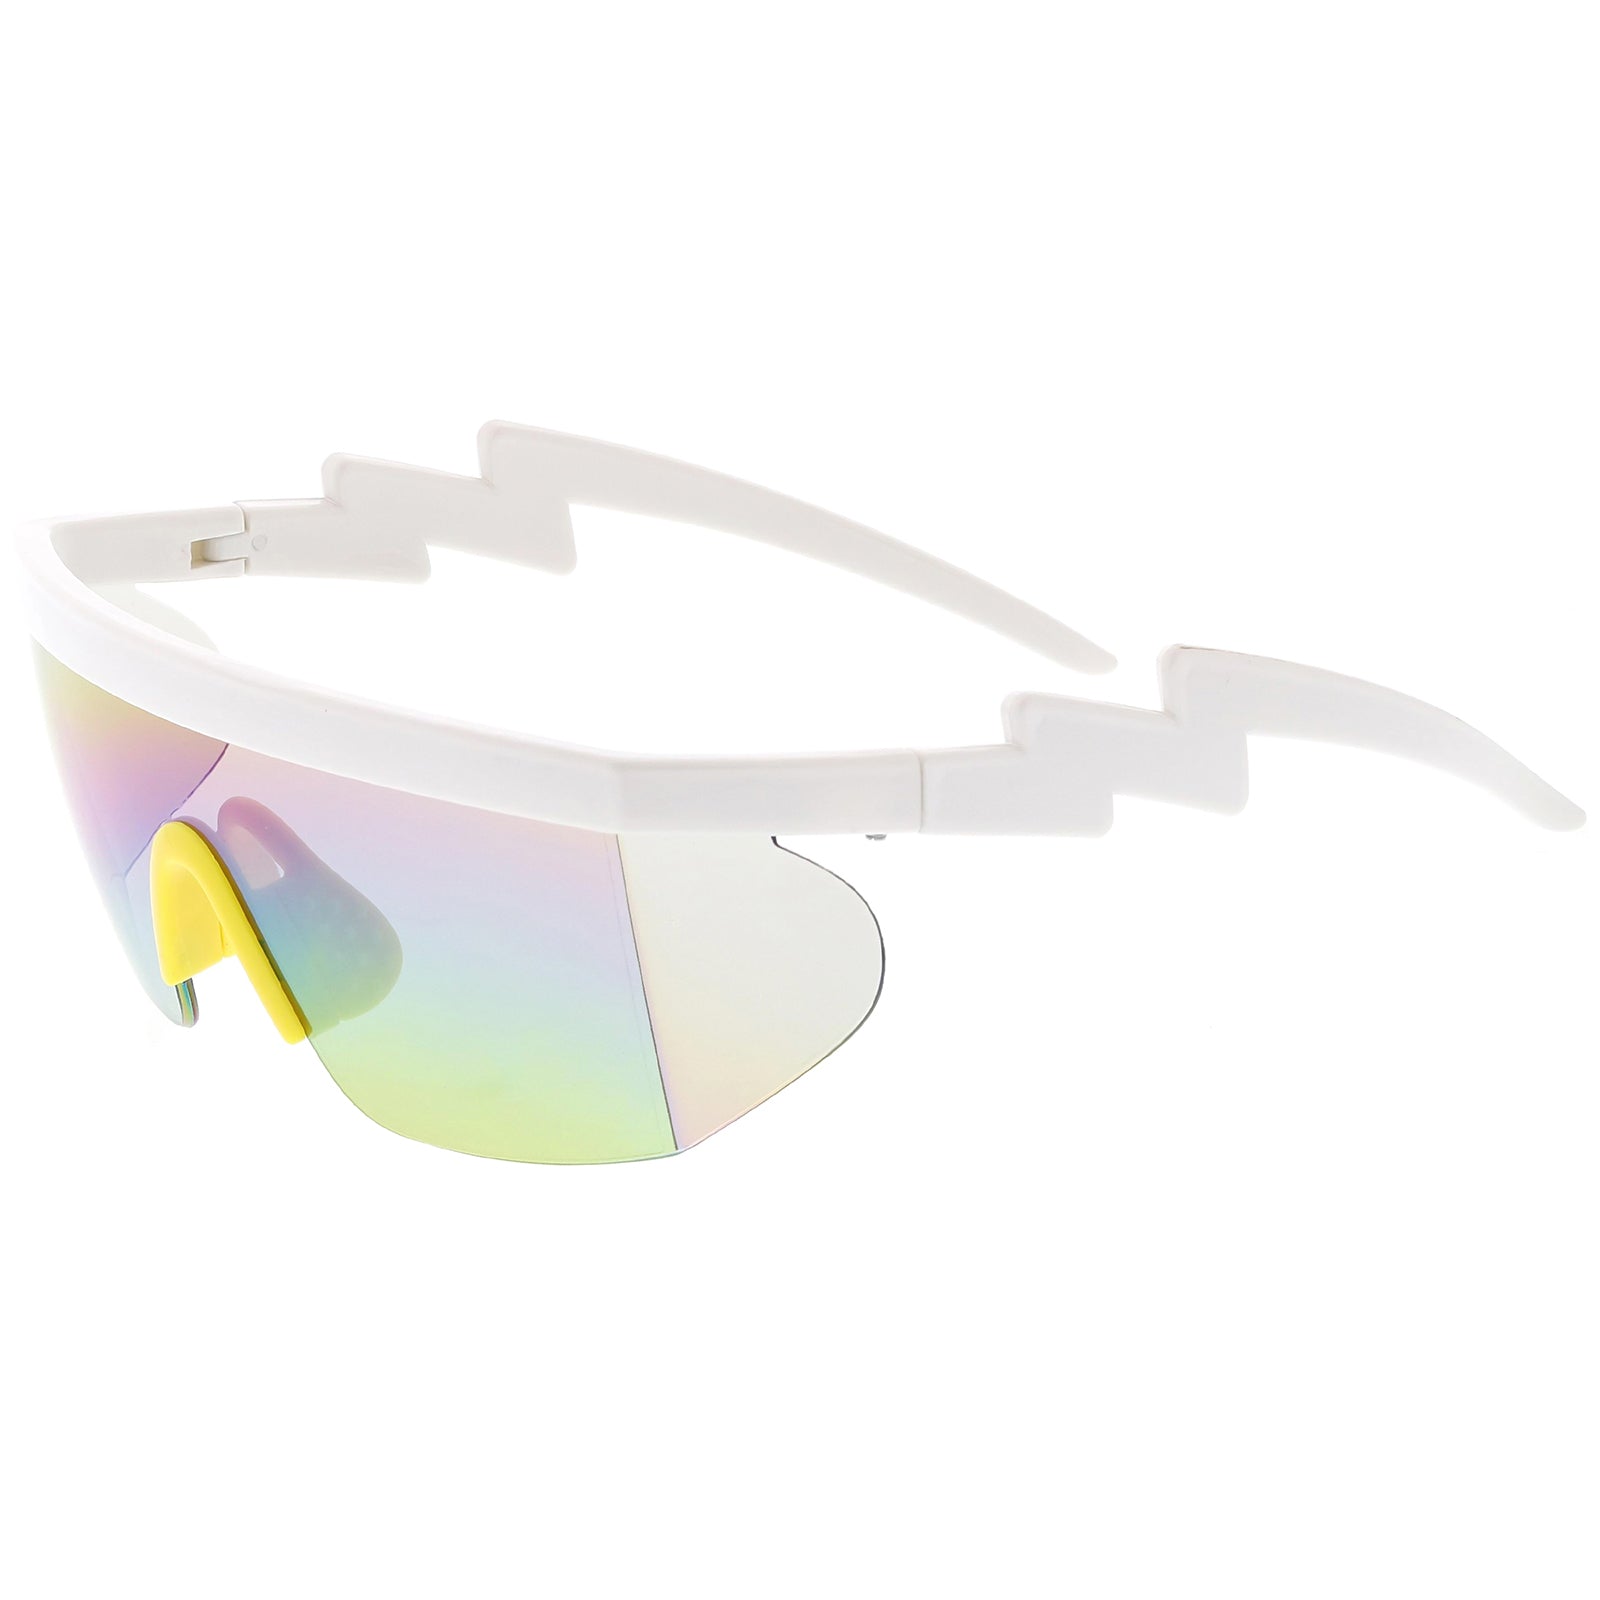 Dervin Unisex Adult Round Sunglasses Multicolor Frame, Black, Pink Lens  (Medium) - Pack of 2,Size M